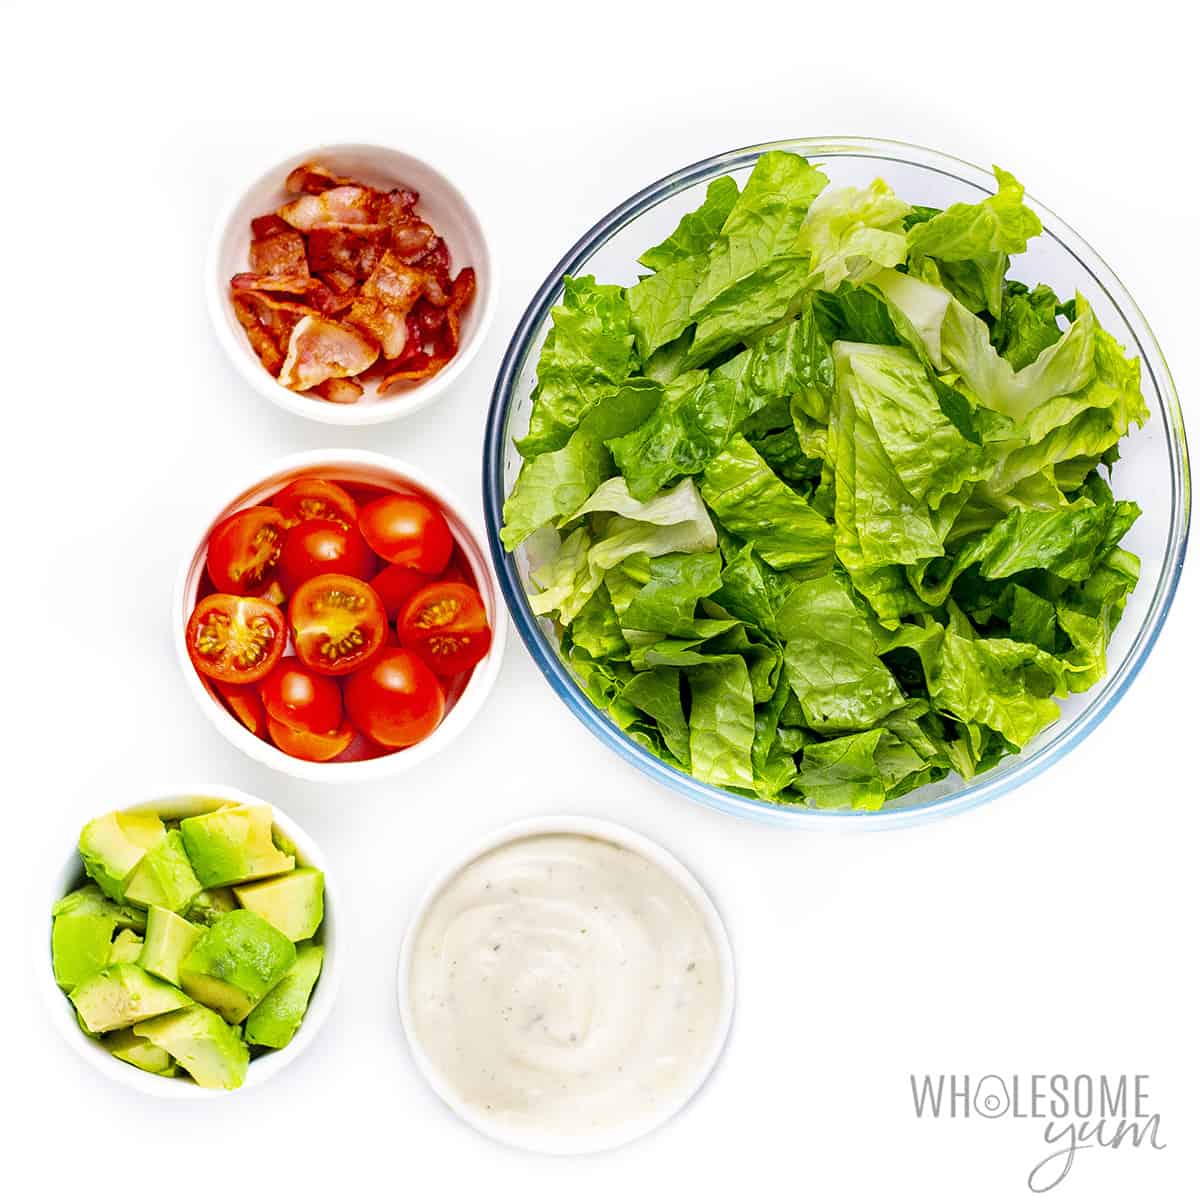 Salad ingredients in bowls.